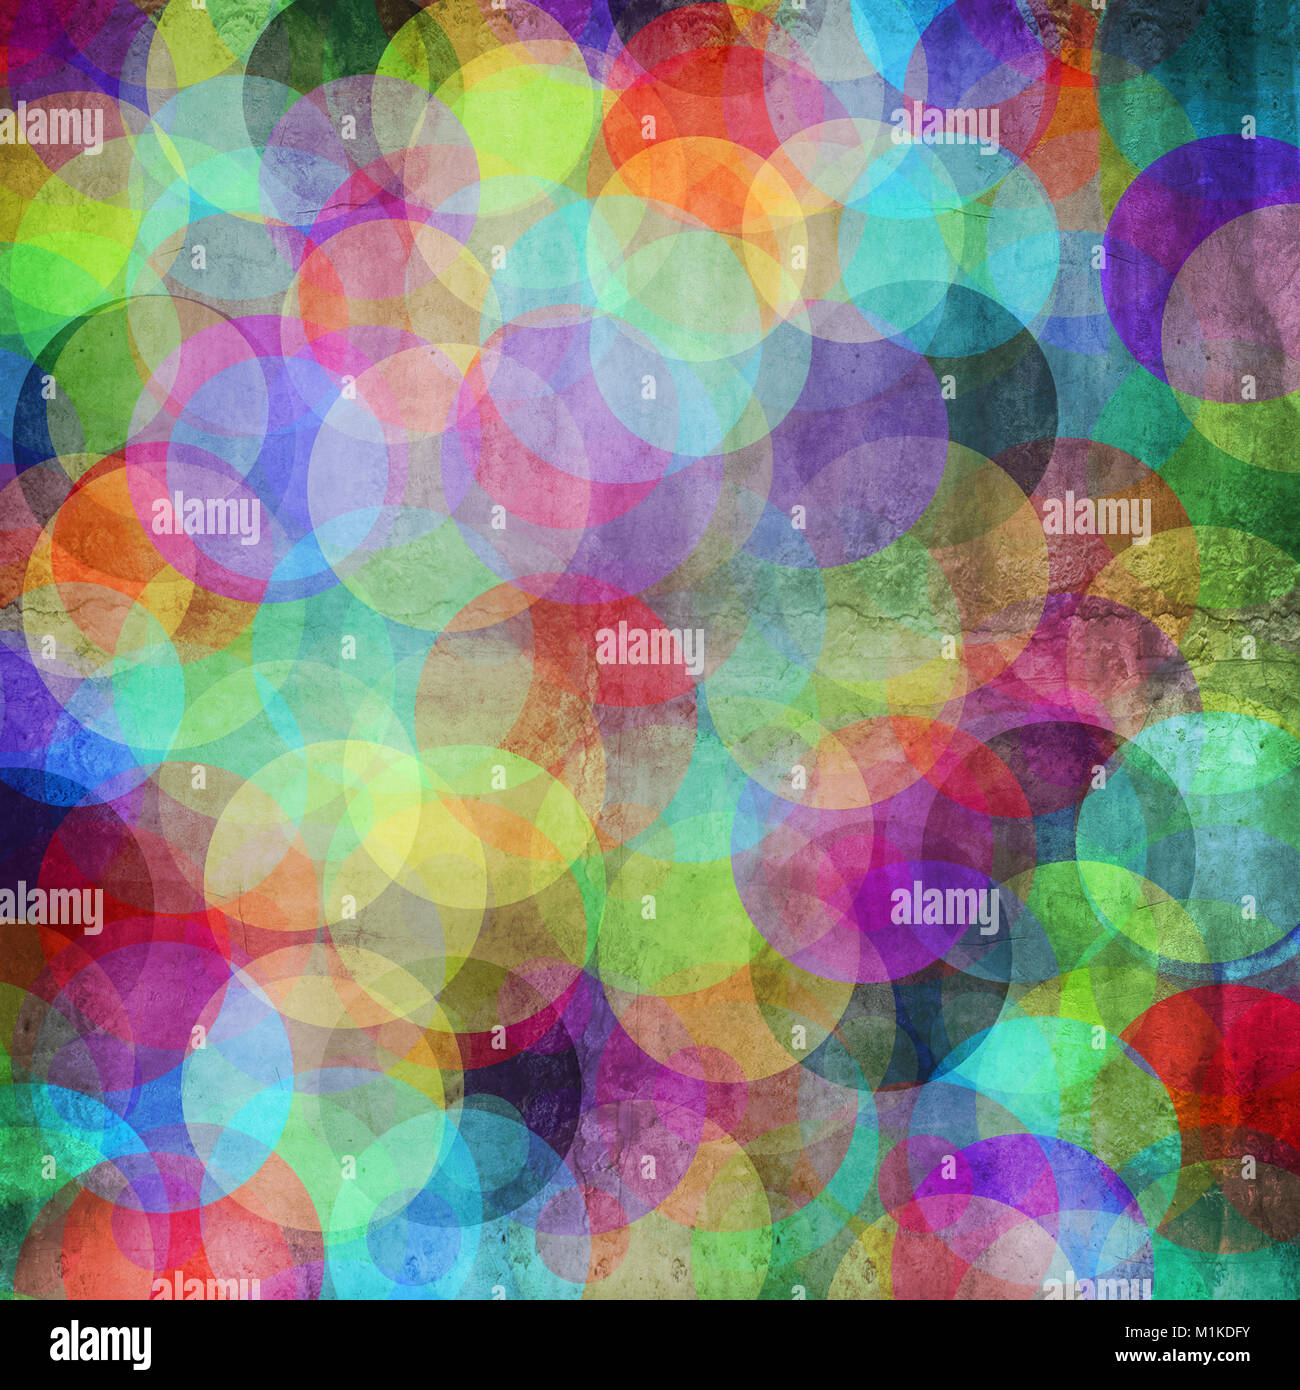 De nombreux cercles de couleur vive sur un grunge background Banque D'Images